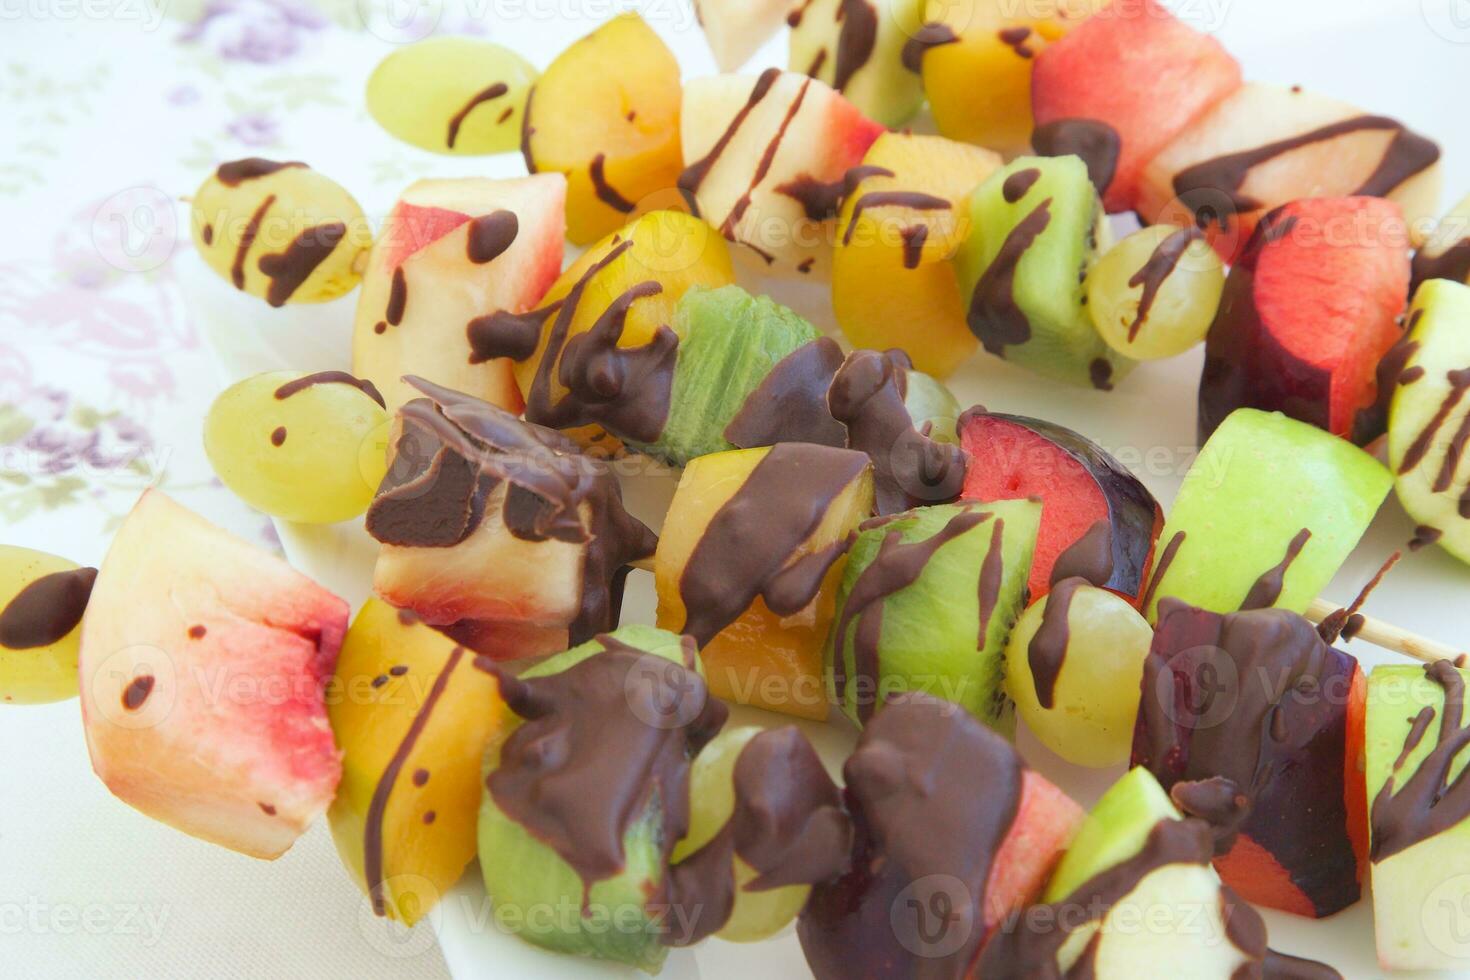 Fruit salad skewers photo